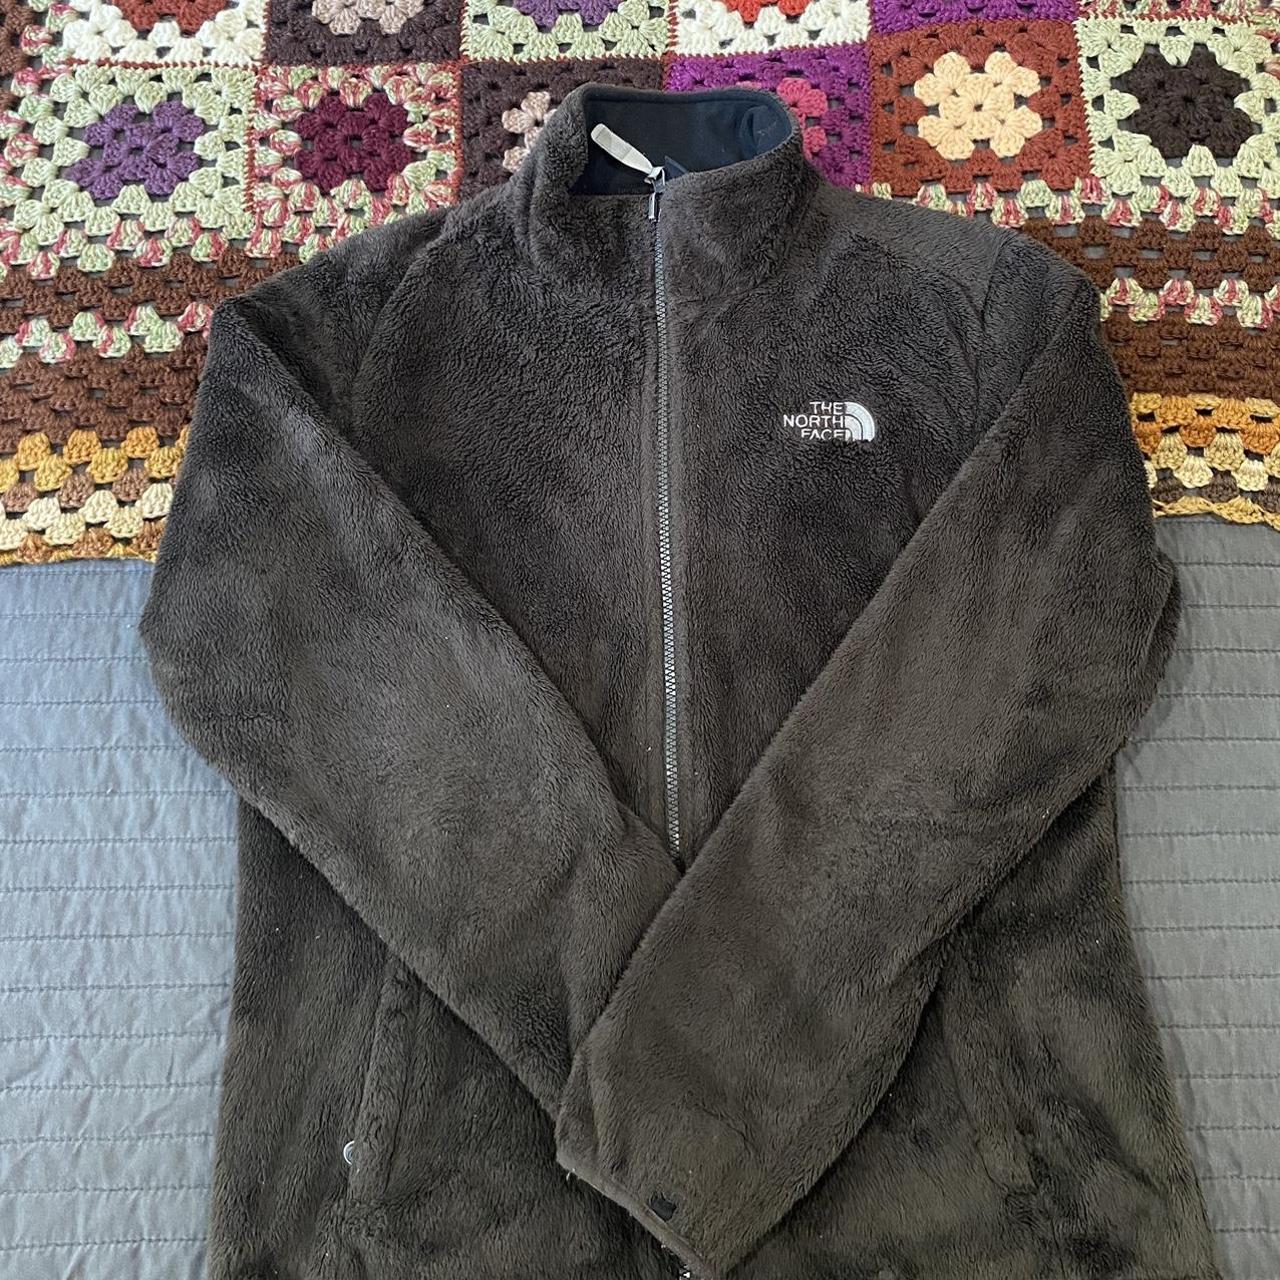 Vintage ‘north face’ women’s zip up fleece jacket - Depop